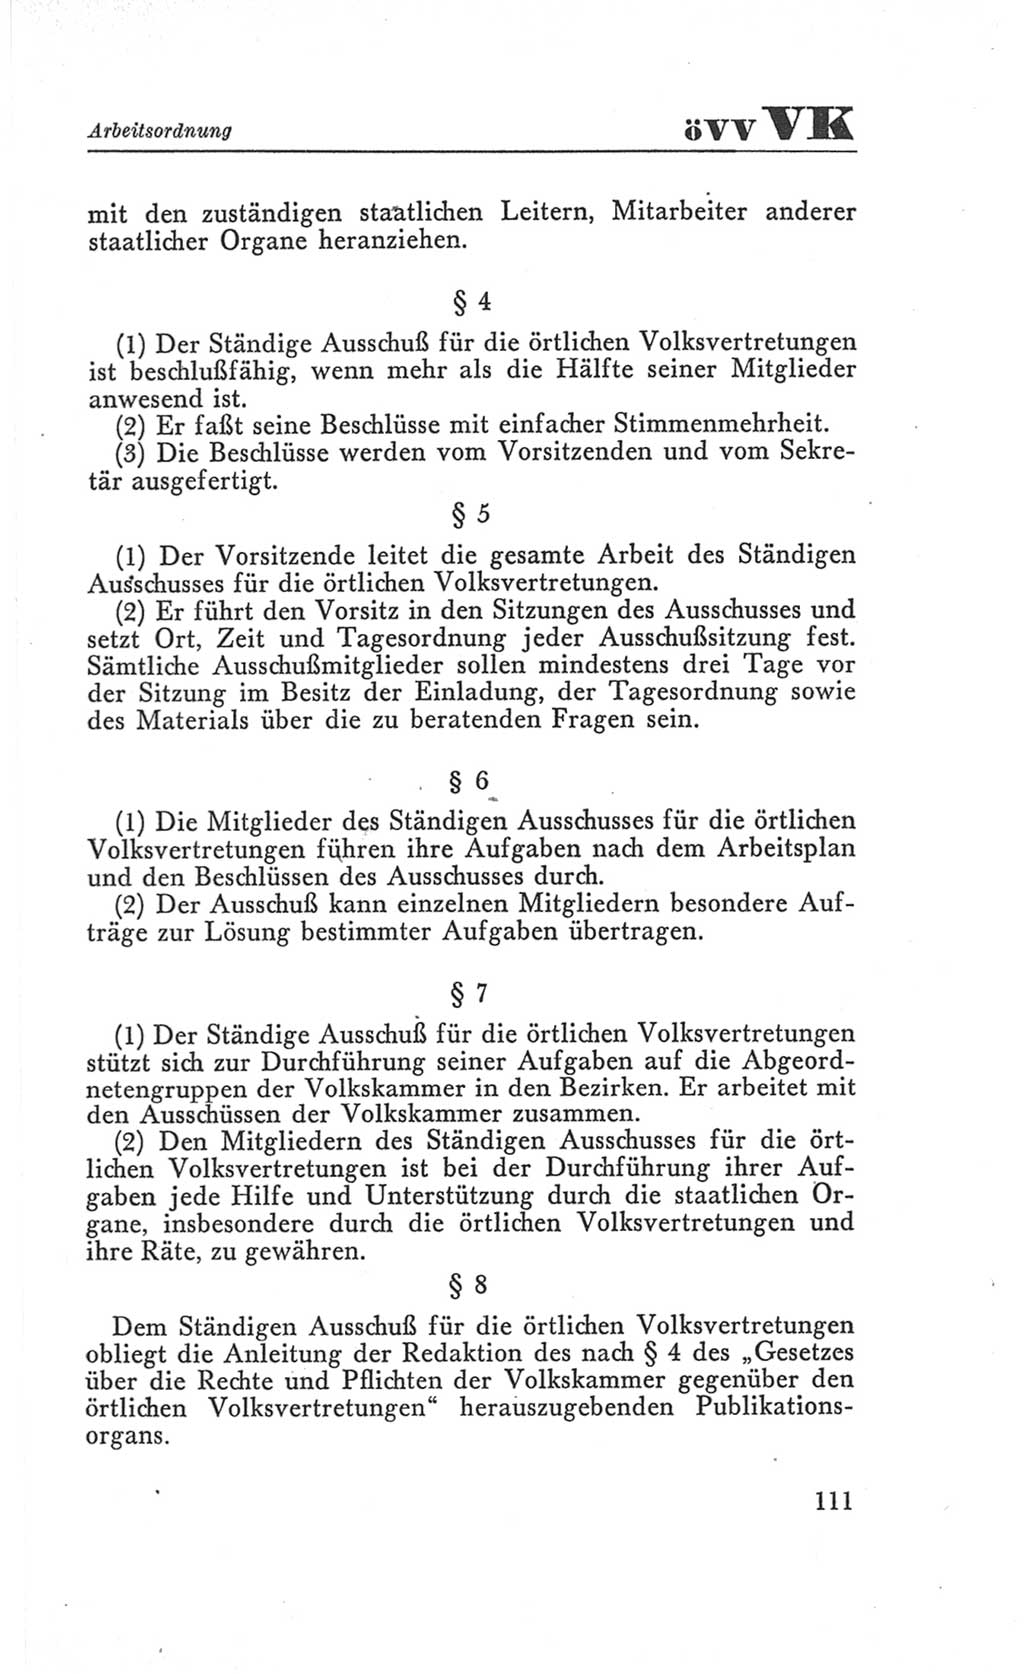 Handbuch der Volkskammer (VK) der Deutschen Demokratischen Republik (DDR), 3. Wahlperiode 1958-1963, Seite 111 (Hdb. VK. DDR 3. WP. 1958-1963, S. 111)